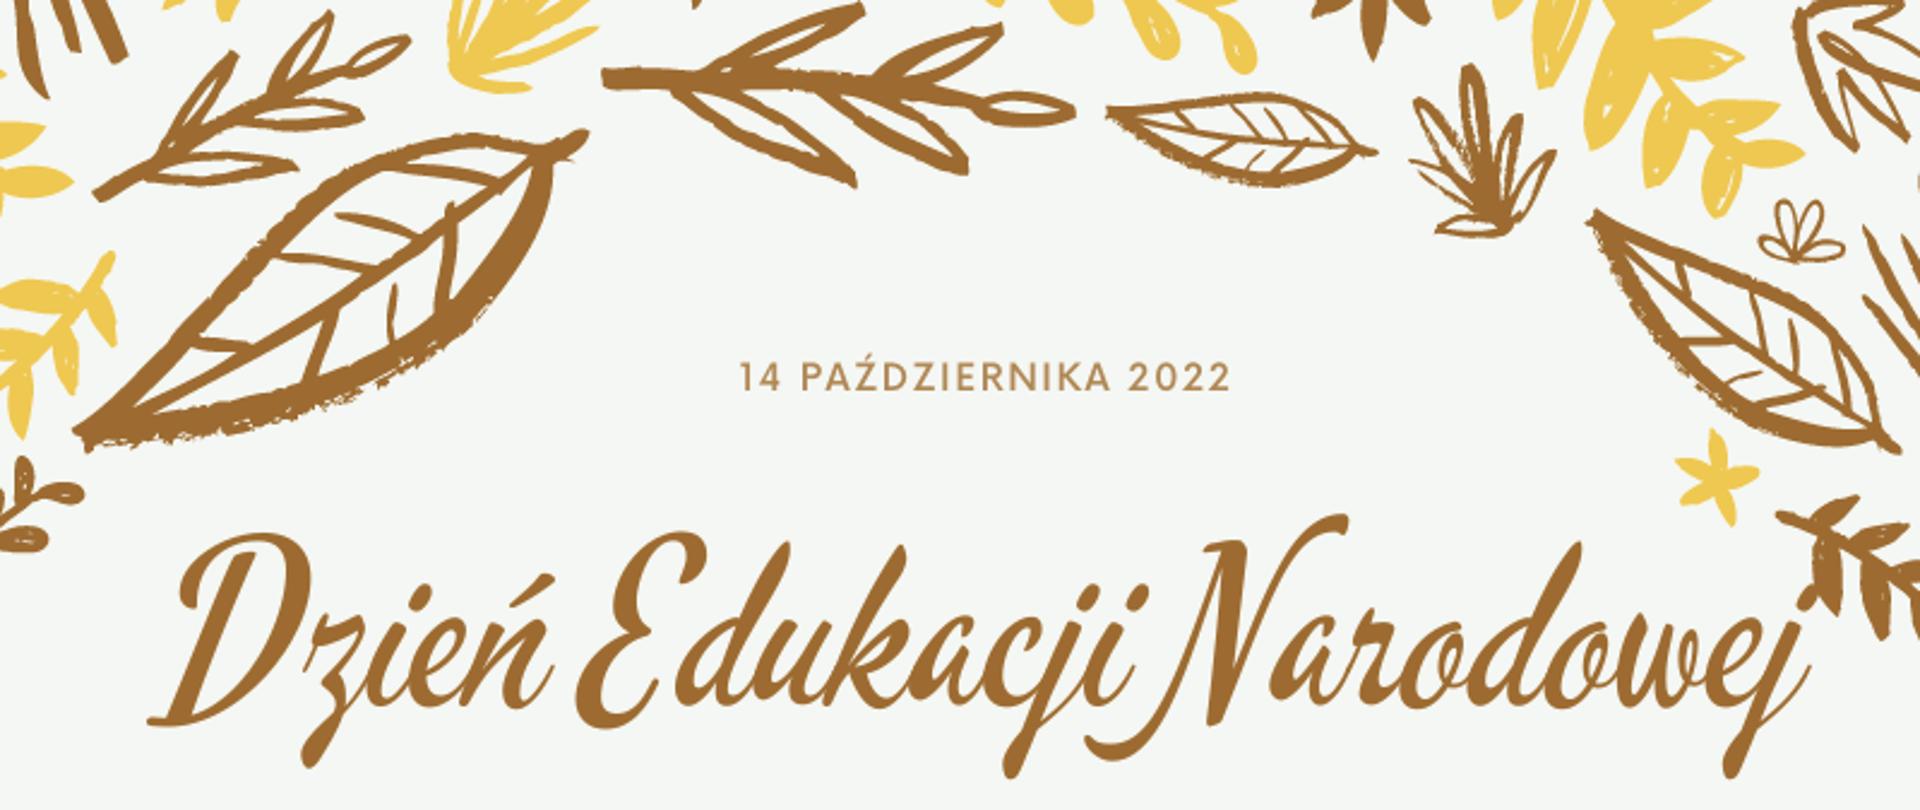 Grafika przedstawiająca w górnej części liście w kolorach żółtym i brązowym, poniżej napis: 14 października 2022, Dzień Edukacji Narodowej, dzień wolny od zajęć lekcyjnych